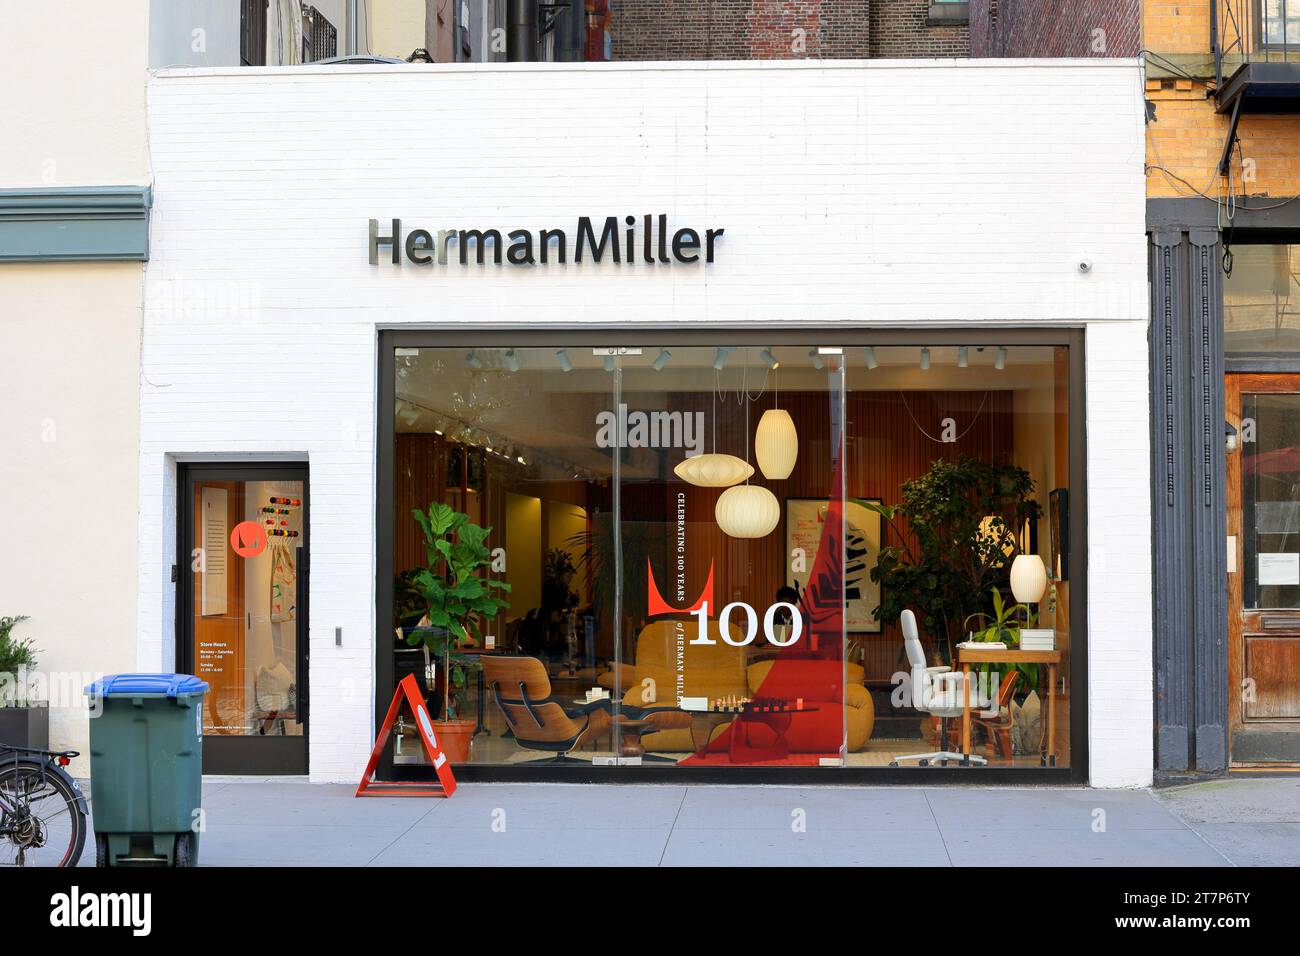 Herman Miller, 30 Gansevoort St, New York, NYC photo de la façade d'un magasin de design contemporain dans le quartier Meatpacking de Manhattan Banque D'Images